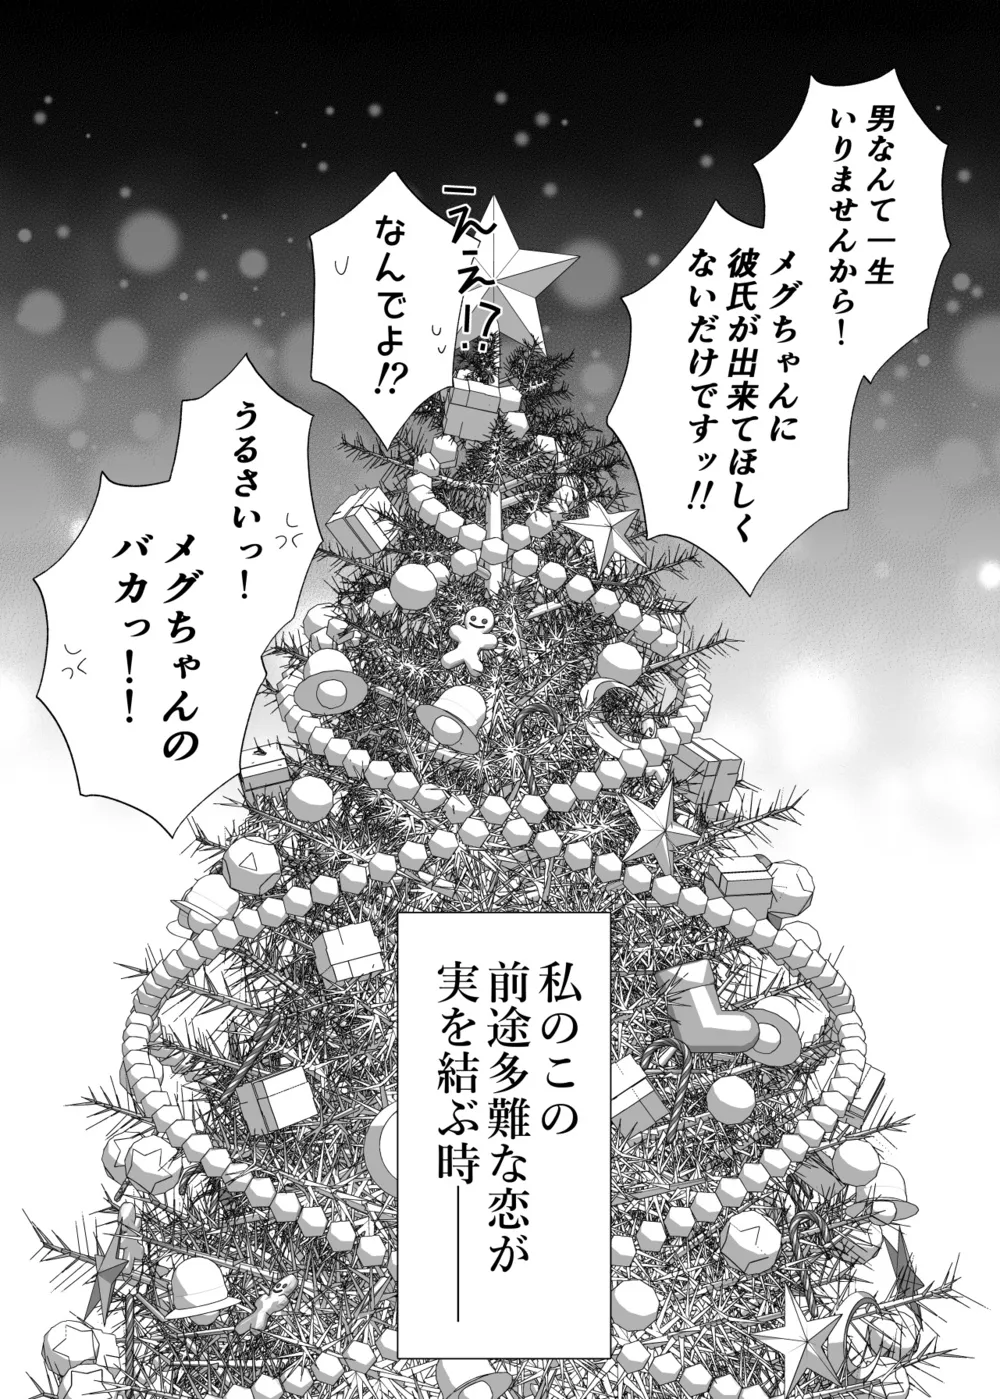 『拗らせ片想い幼馴染百合クリスマス漫画』(11/12)